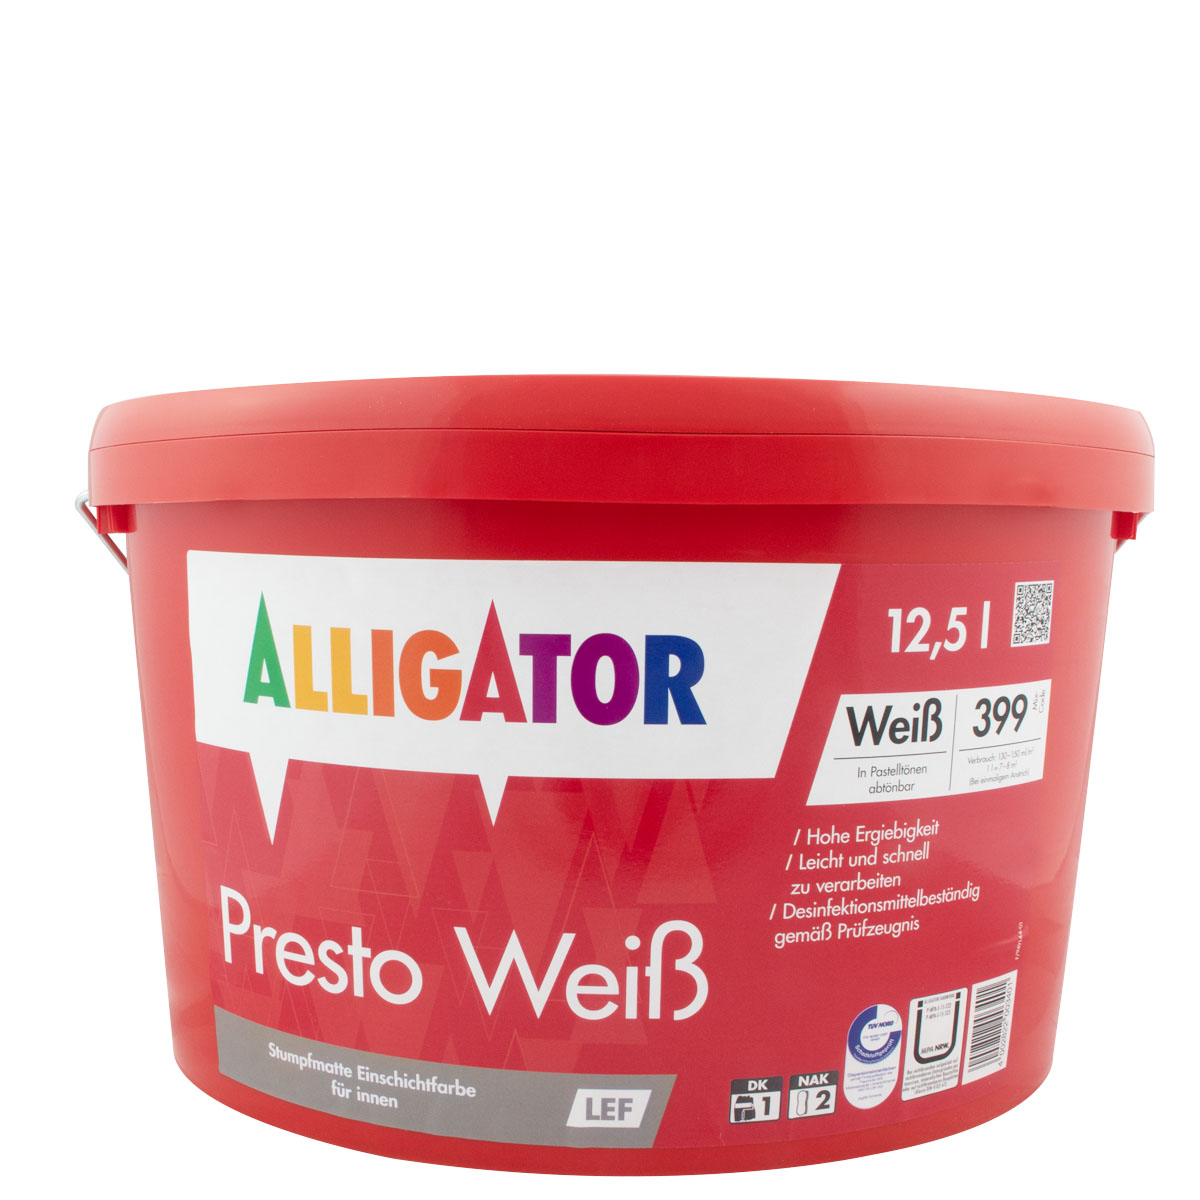 Alligator Presto Weiß LEF 12,5L weiss ,Dispersions-Innenfarbe, hochdeckend